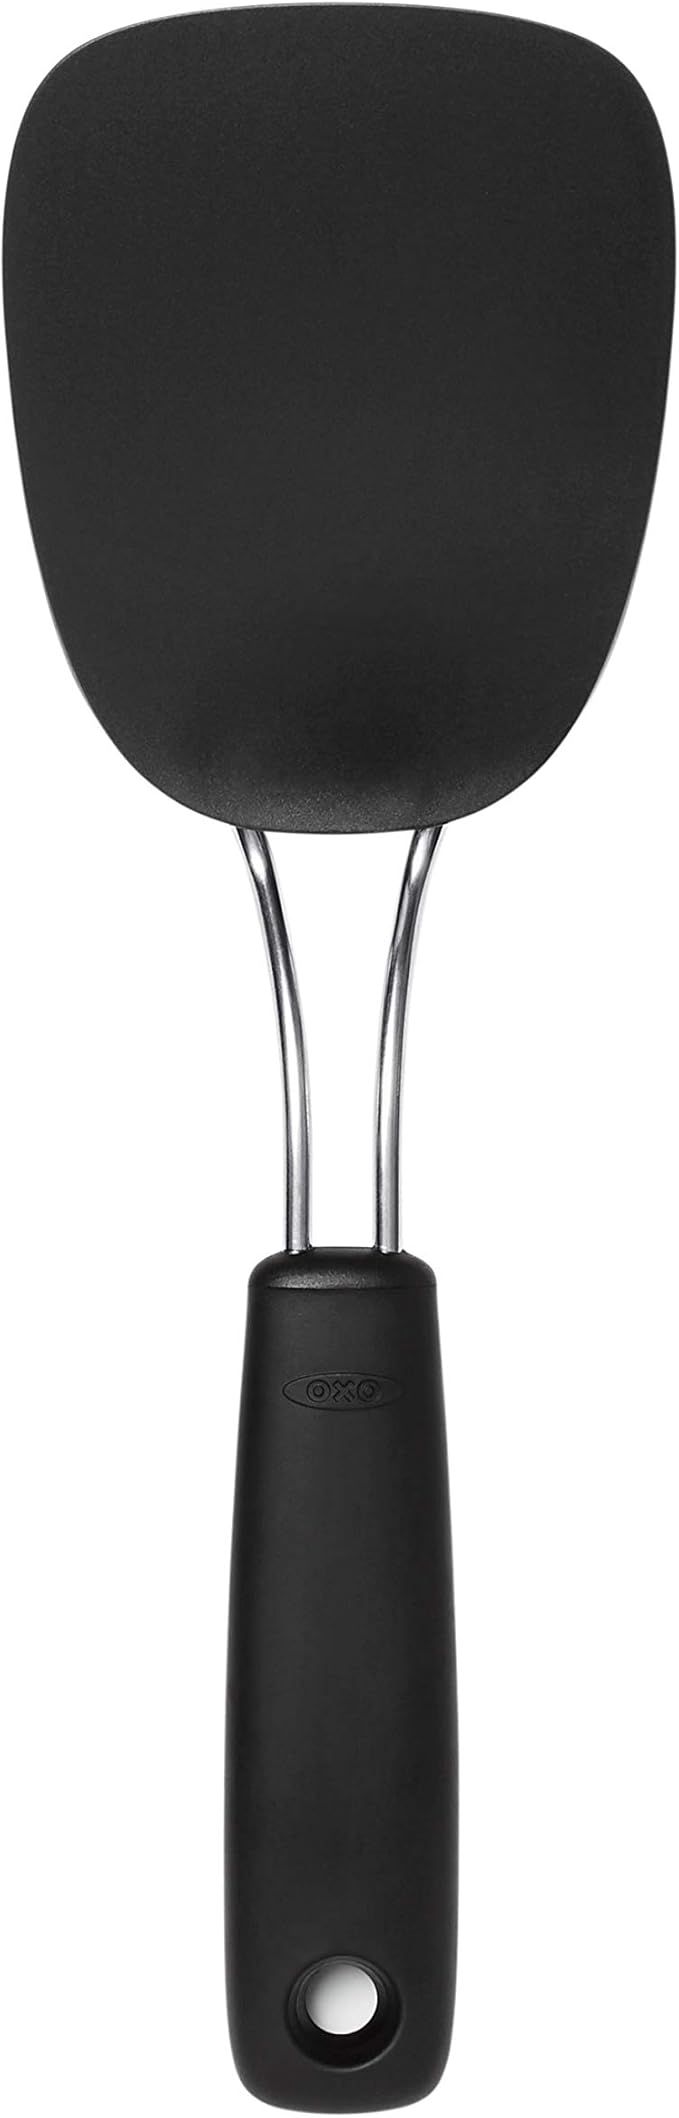 OXO 65191 Good Grips Nylon Flexible Turner, Black | Amazon (US)